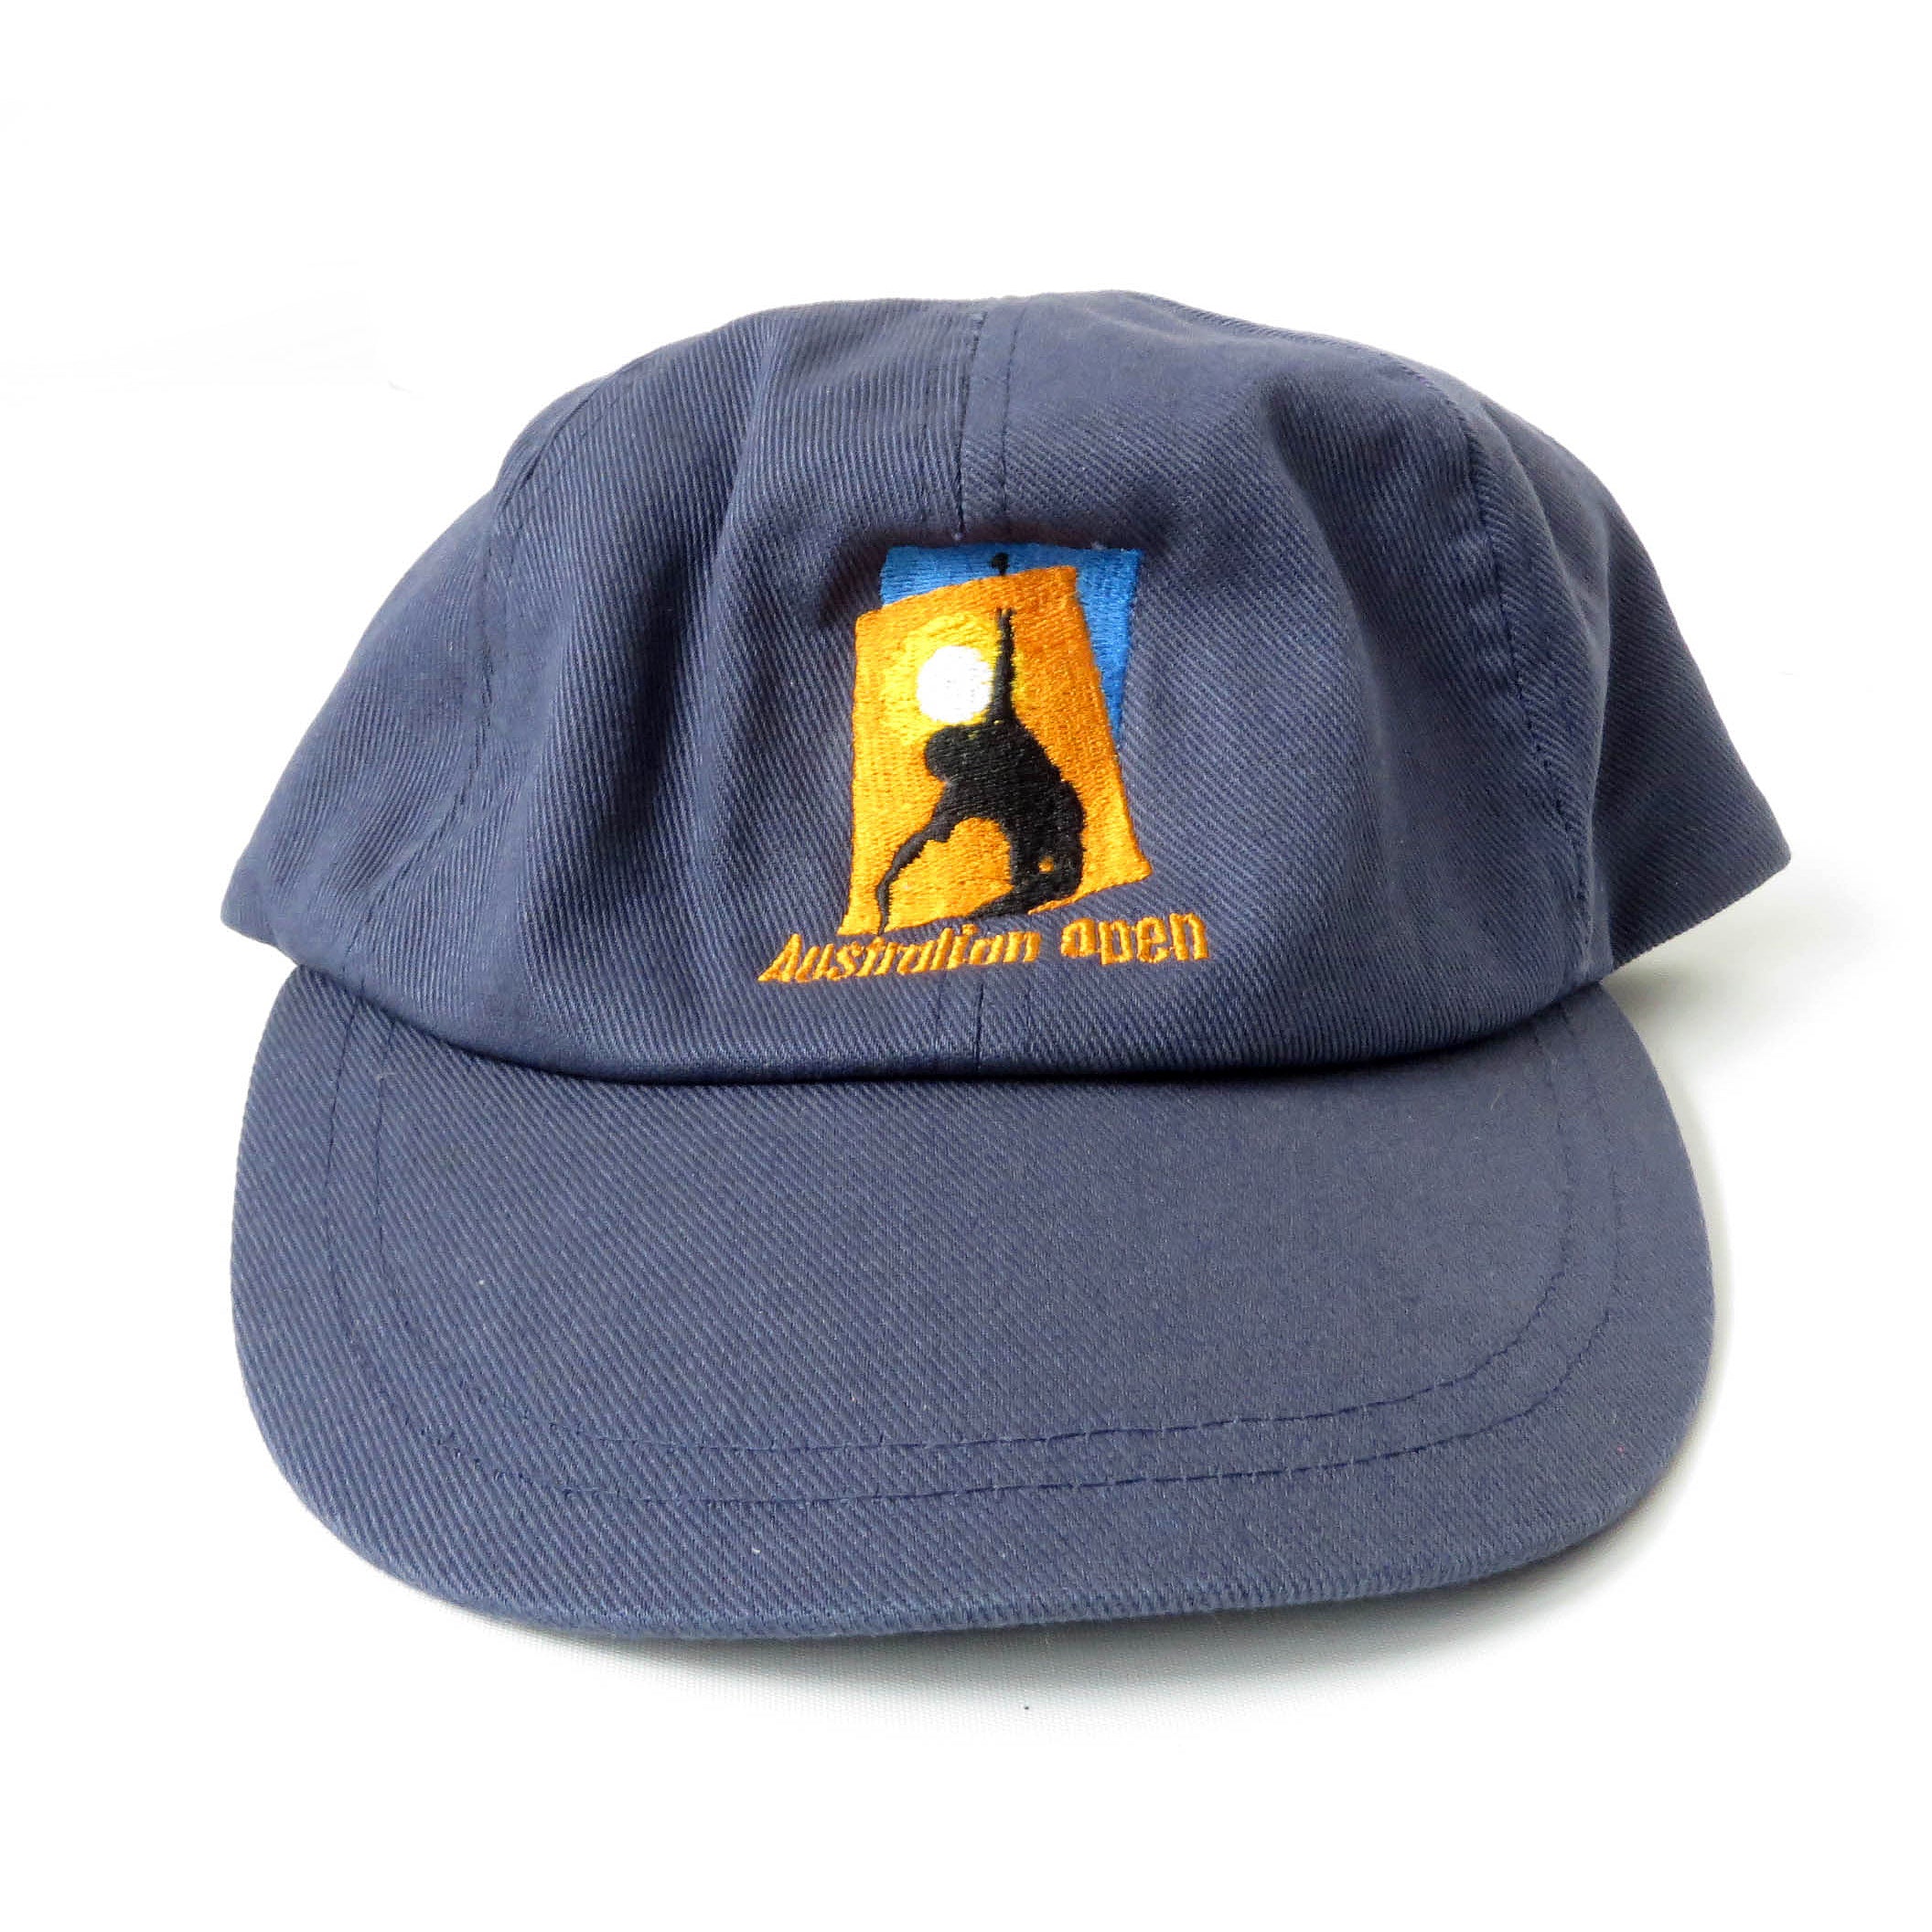 Vintage Nike Australian Open Snapback Hat